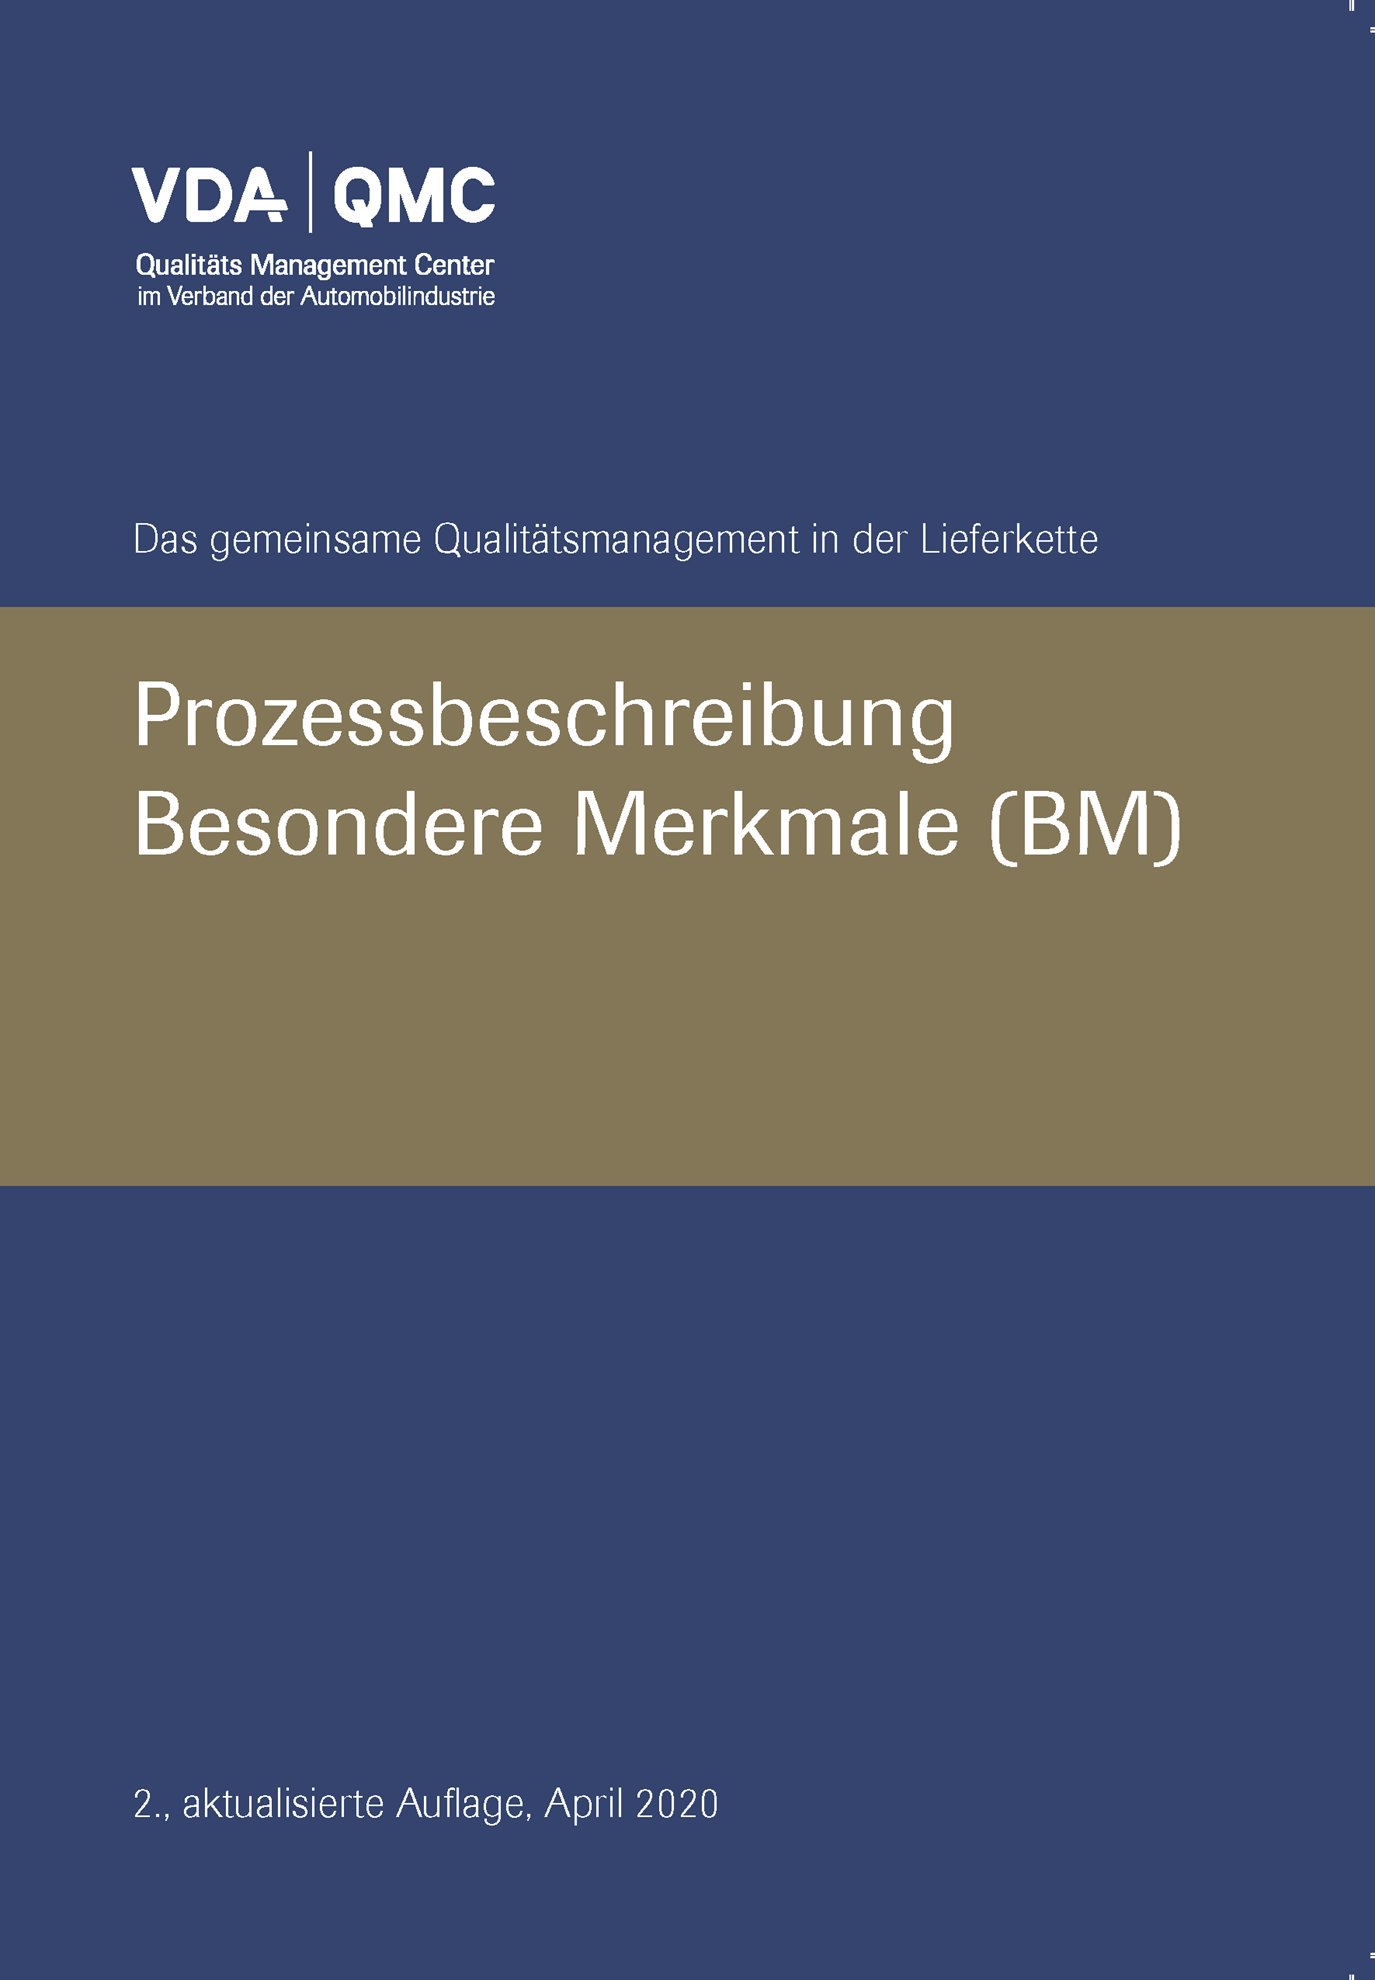 Publikation  VDA Besondere Merkmale, Prozessbeschreibung, 2., aktualisierte Auflage, April 2020 1.4.2020 Ansicht